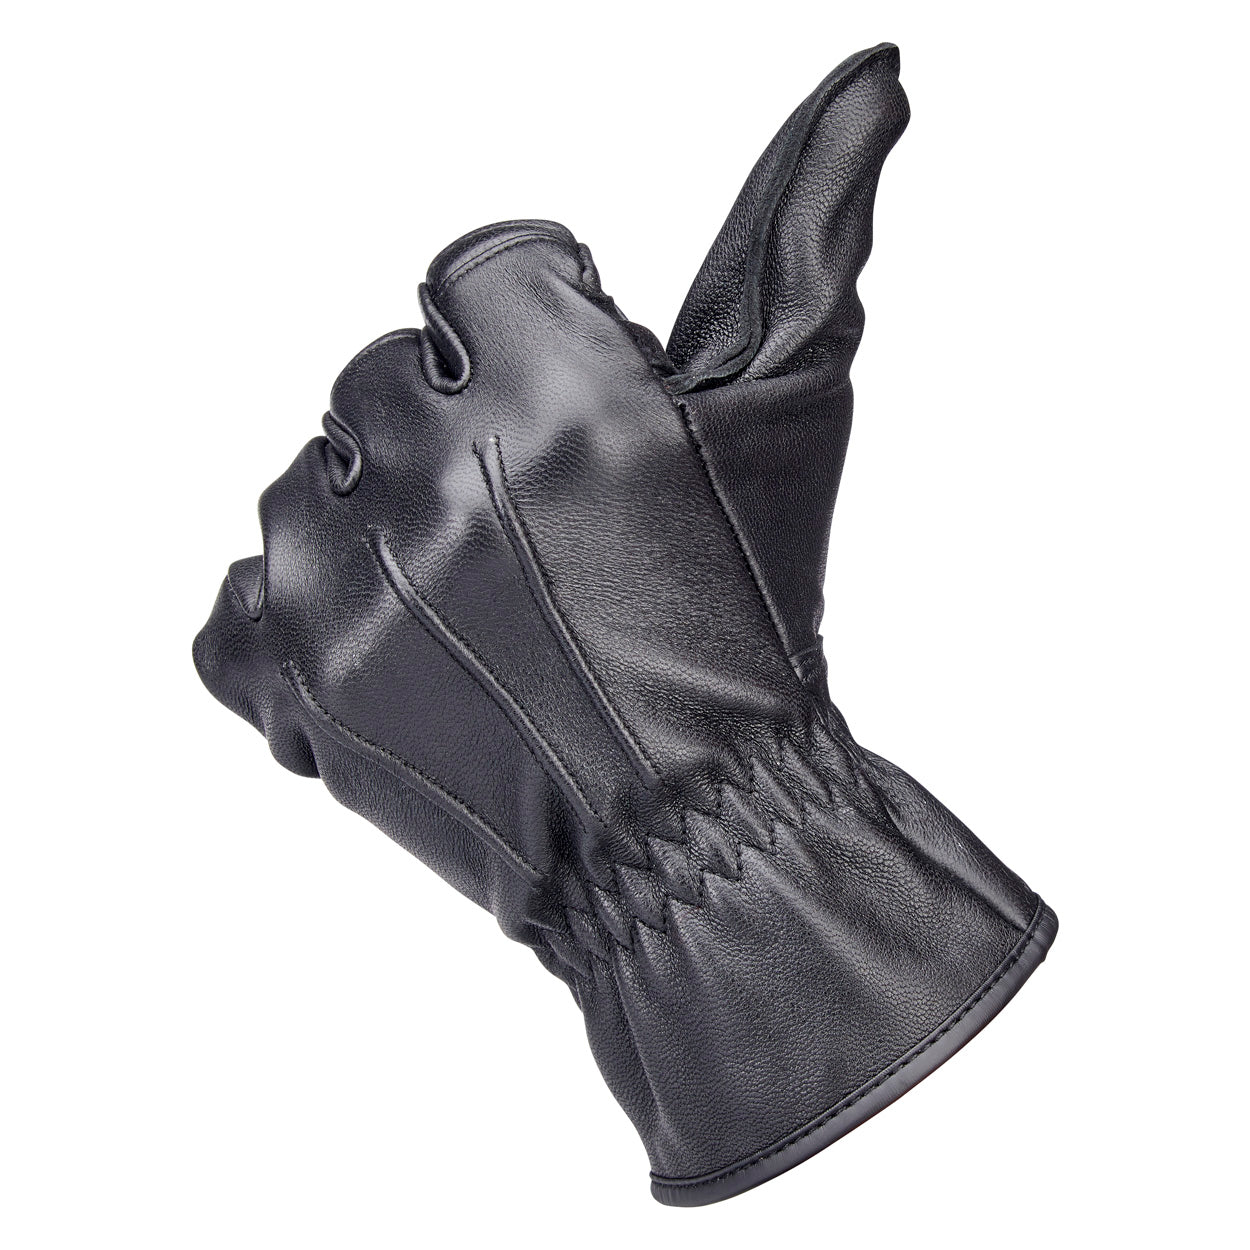 Biltwell Work Gloves 2.0 - Black